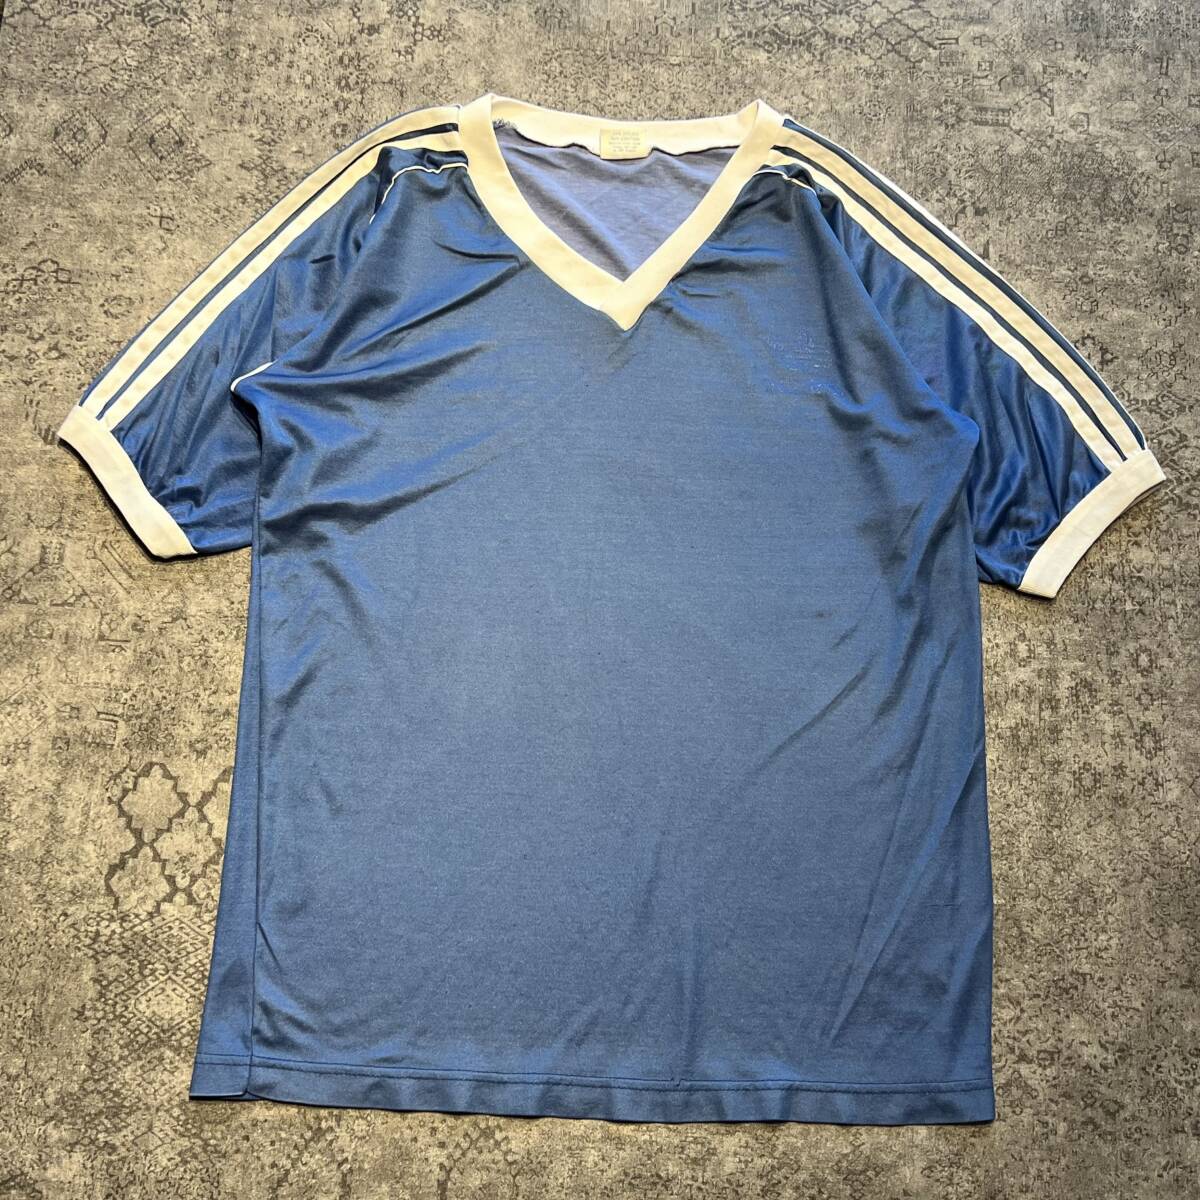 Vintage 90s adidas Game Shirt アディダス ゲームシャツ サッカー ユニフォーム トレフォイル ブルー 90年代 ヴィンテージ ビンテージ_画像1